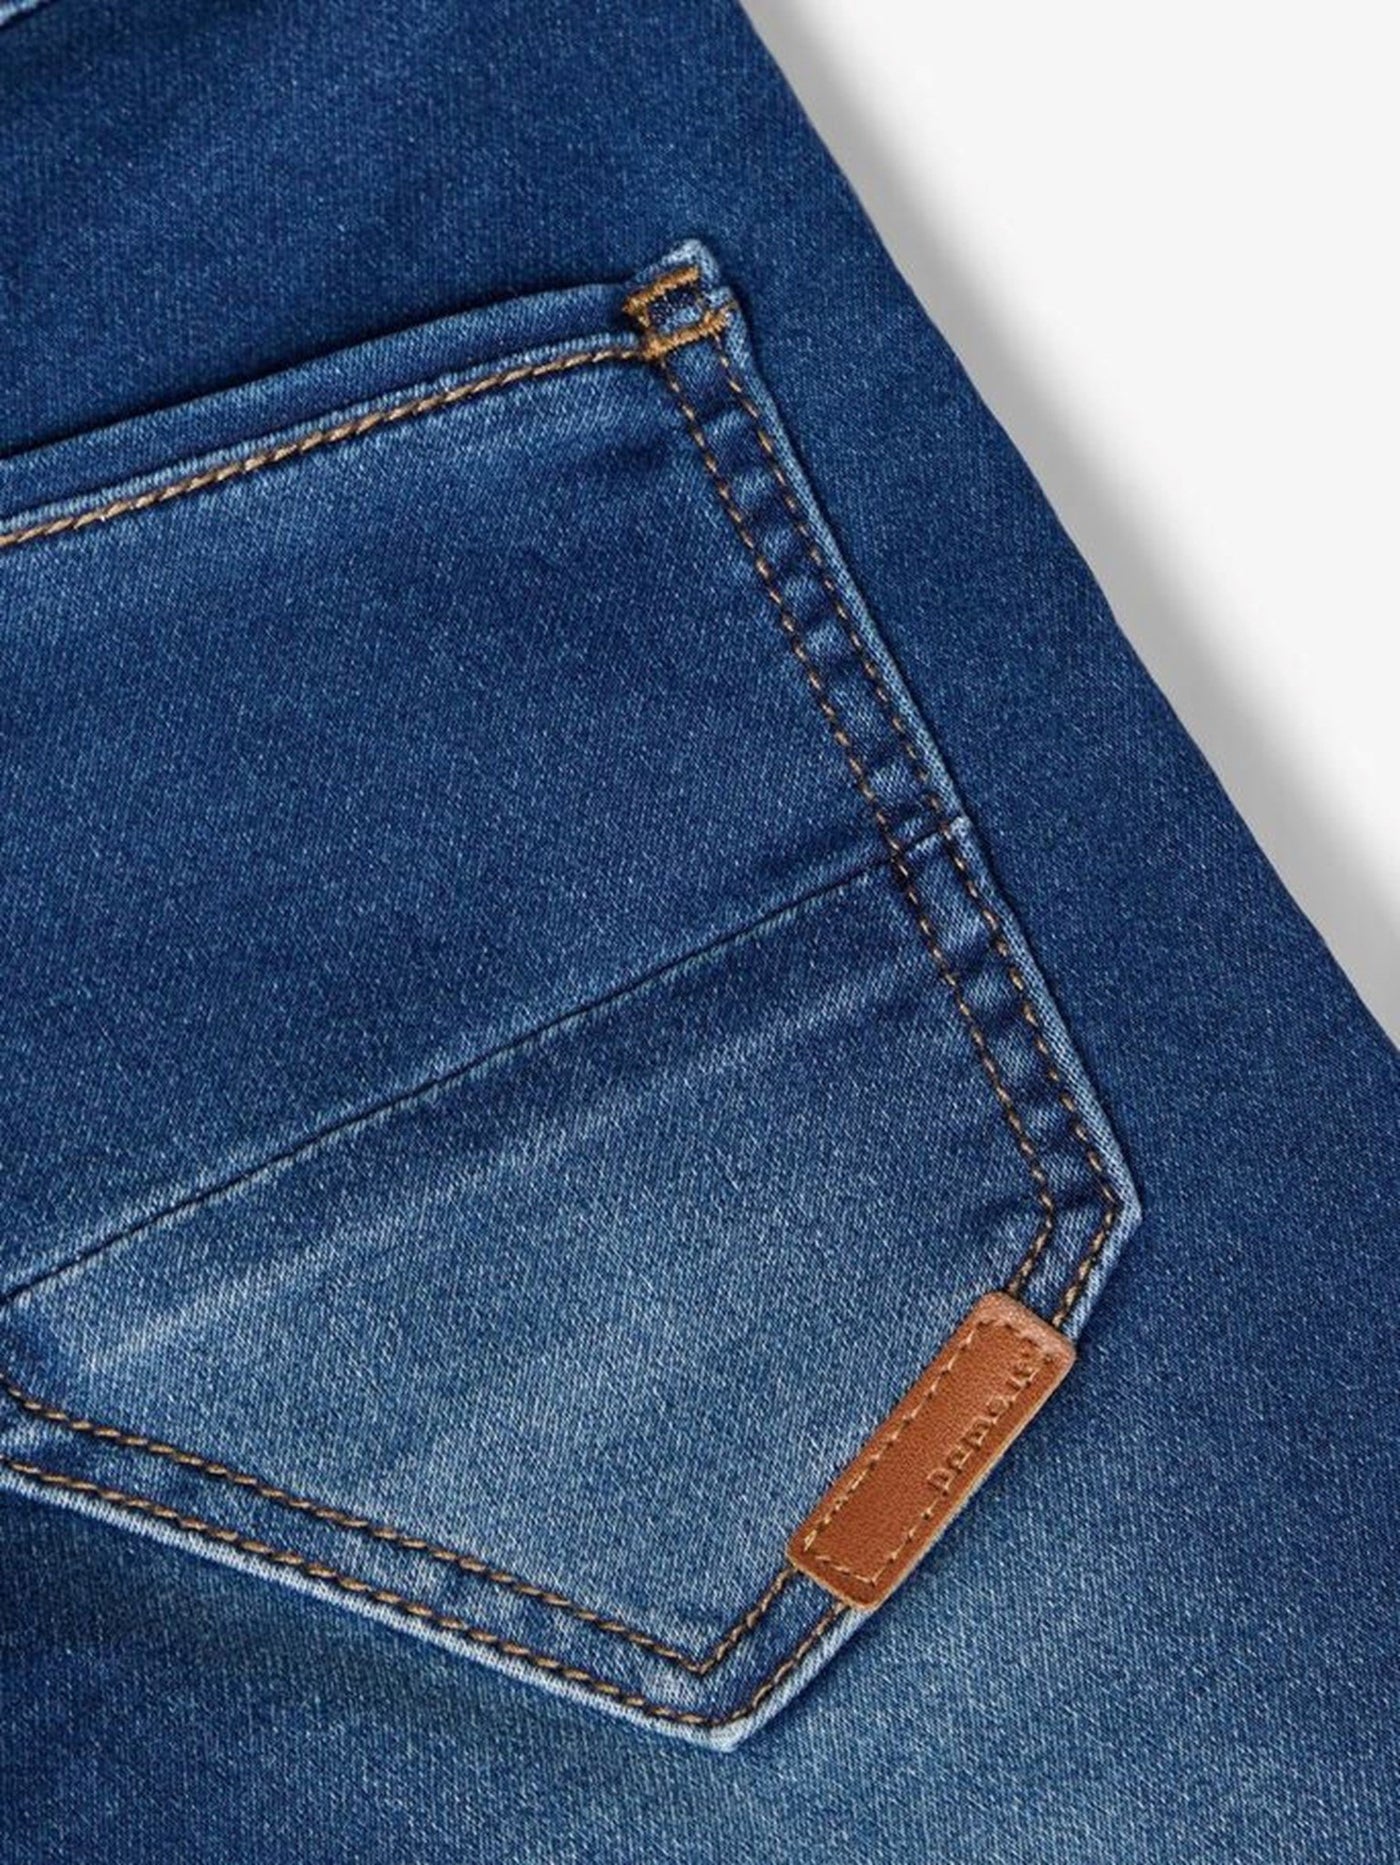 Sweat Denim Jeans - Mörkblå Denim - Name It - Vit 4